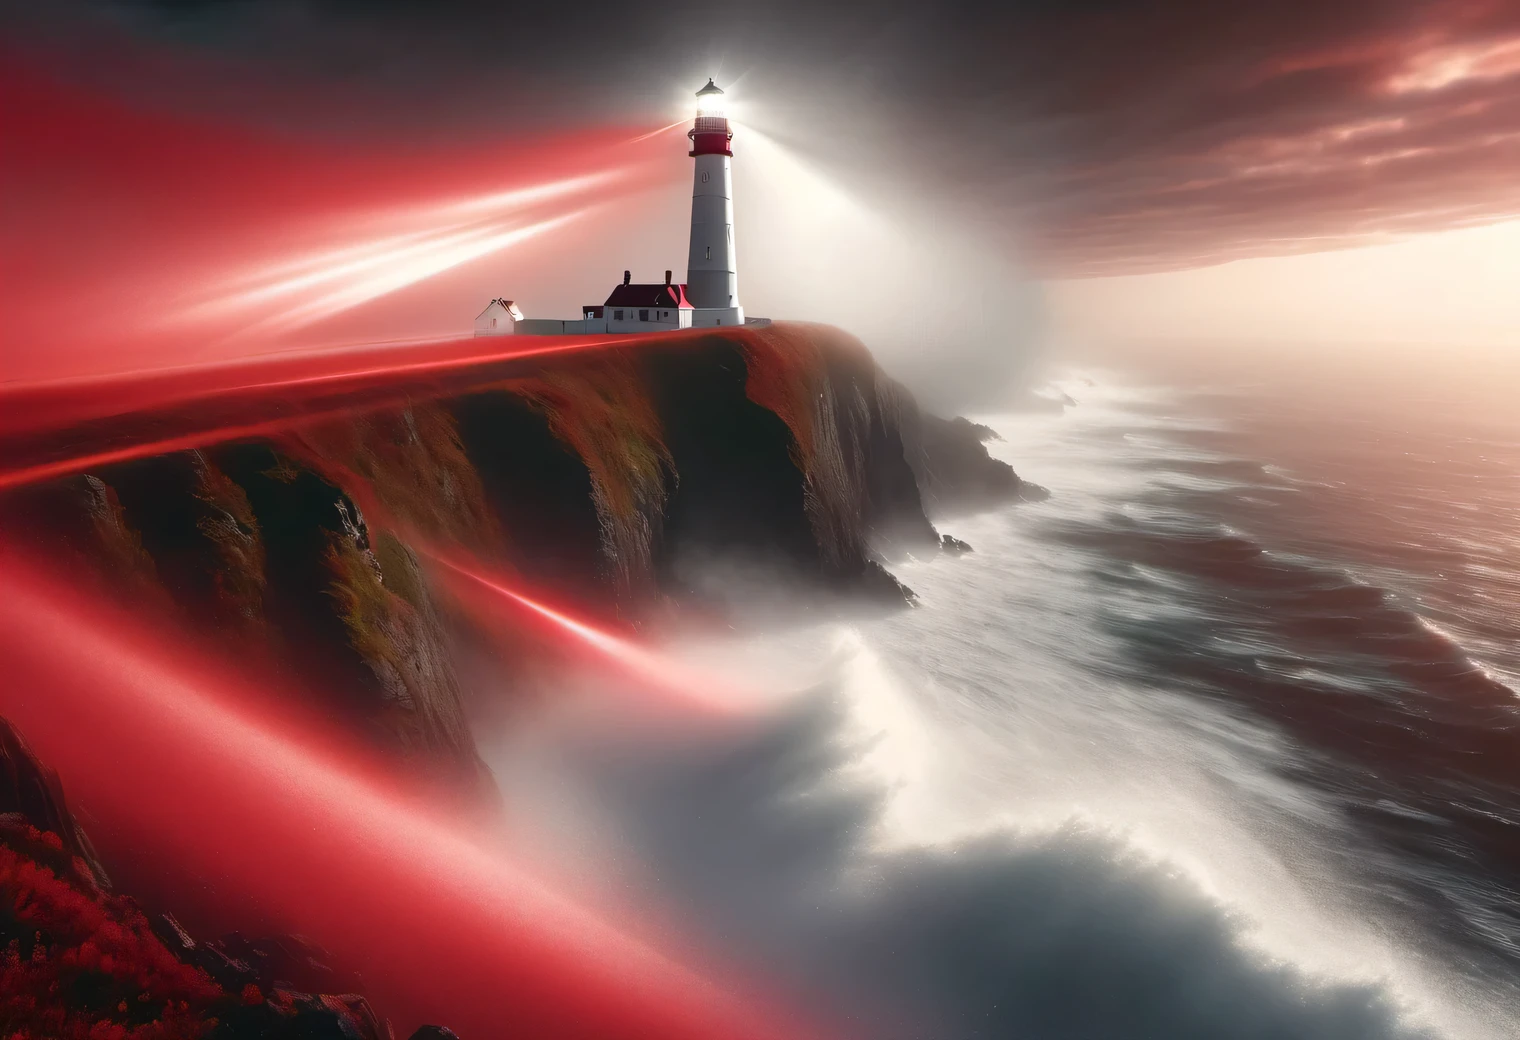 art rouge, Peinture réaliste dans les tons rouges., (brouillard:1.2), (the wind carries mer spray and foam:1.7), the dark Une tempêtey sky is illuminated by the red light of the lighthouse, effet de double exposition, (1 Phare au bord d&#39;une falaise:1.5 s&#39;allume en rouge:1.3505), mer, fort (Une tempête:1.3050), Une tempêtey wind:1.250), rétroéclairage rouge, (Tracé laser:1.2), (Effet Tyndall:1.4055 poutres de phare:1.4), Détails élevés, Une tempête haze, lissage des textures, contour flou, palette rouge